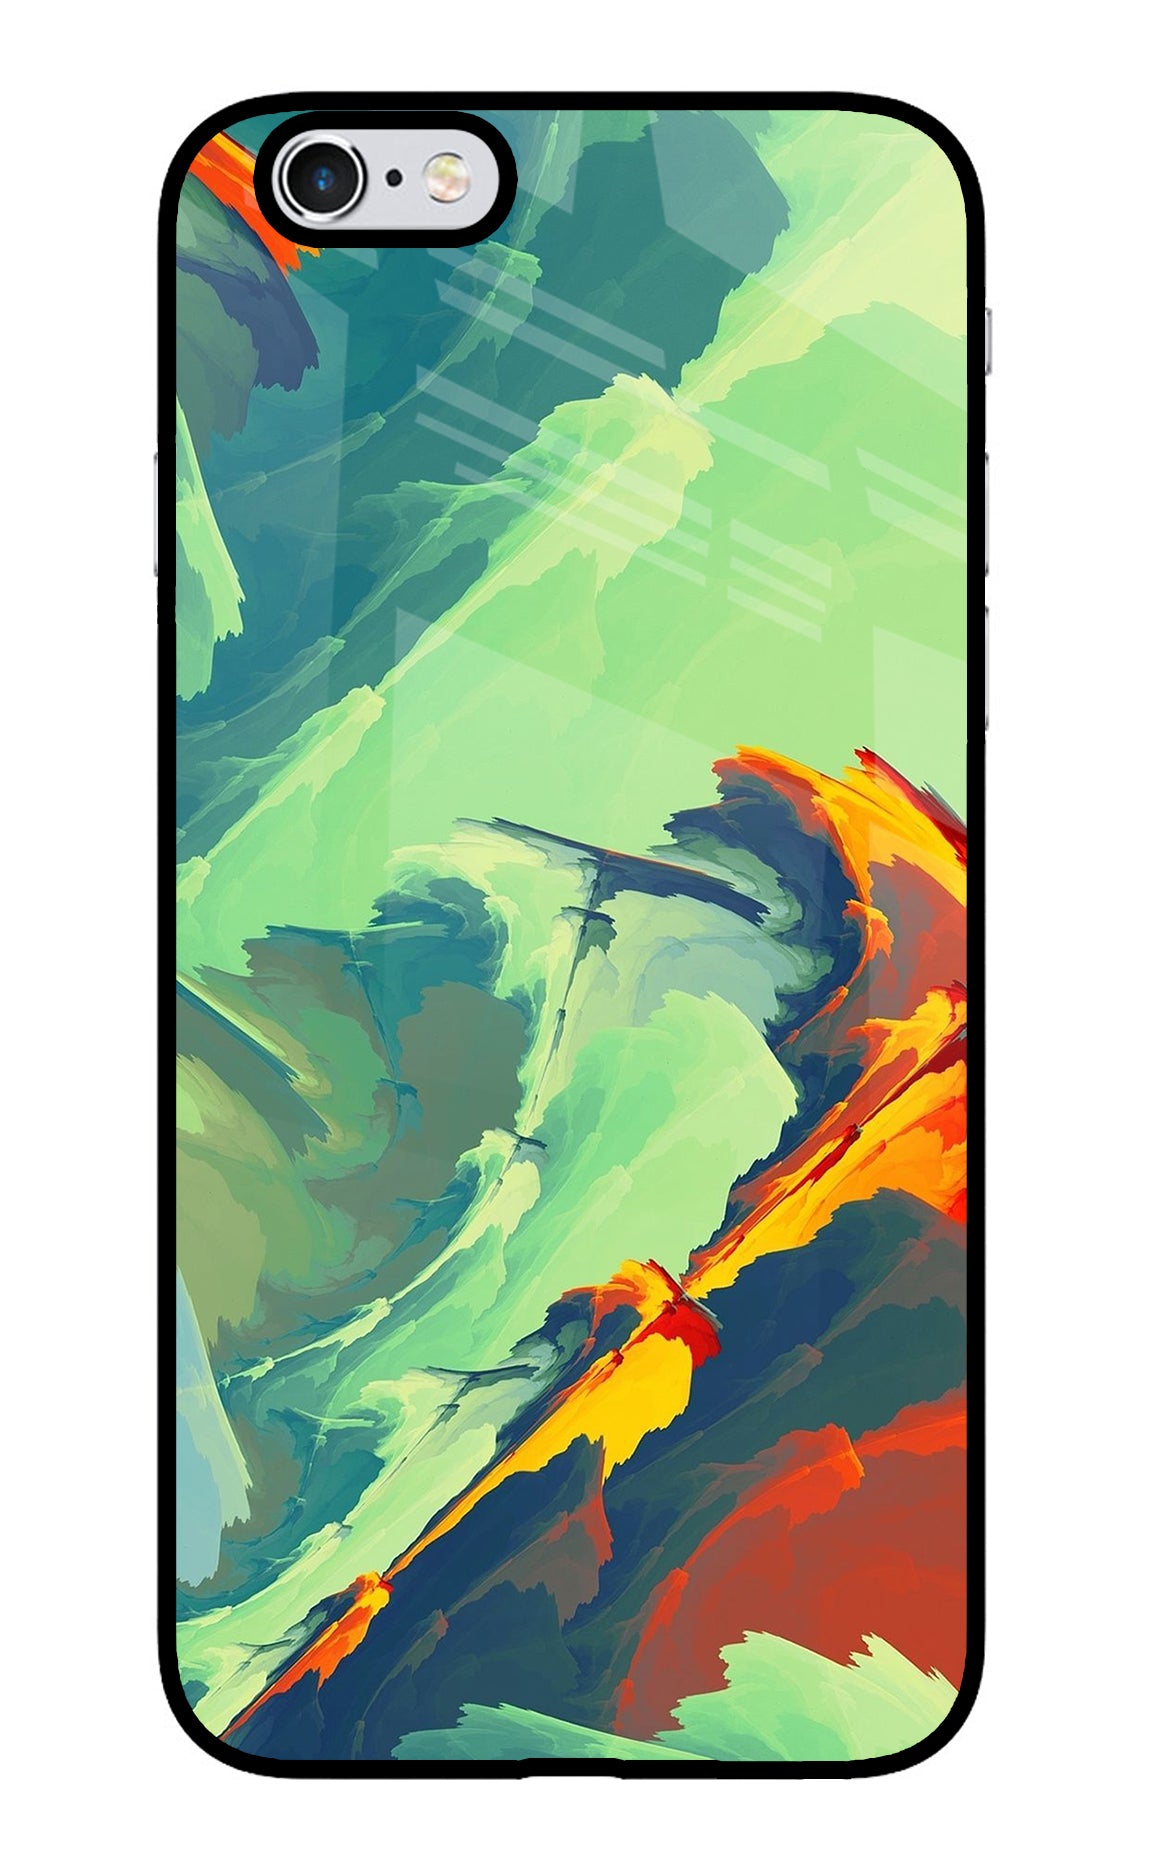 Paint Art iPhone 6/6s Glass Case